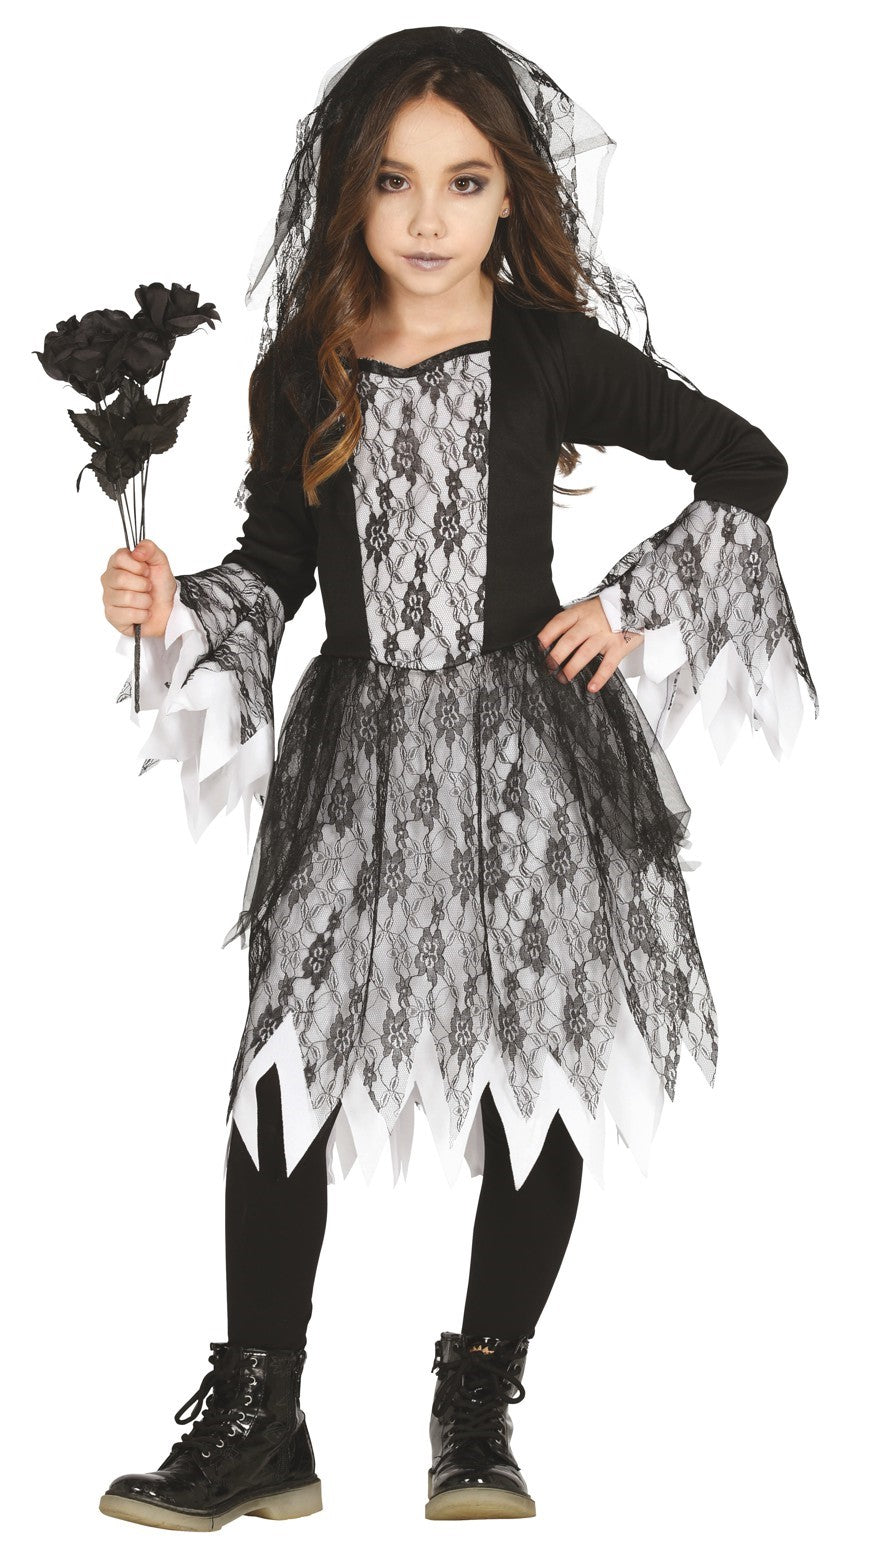 Ghastly Ghost Bride Girls Halloween Costume